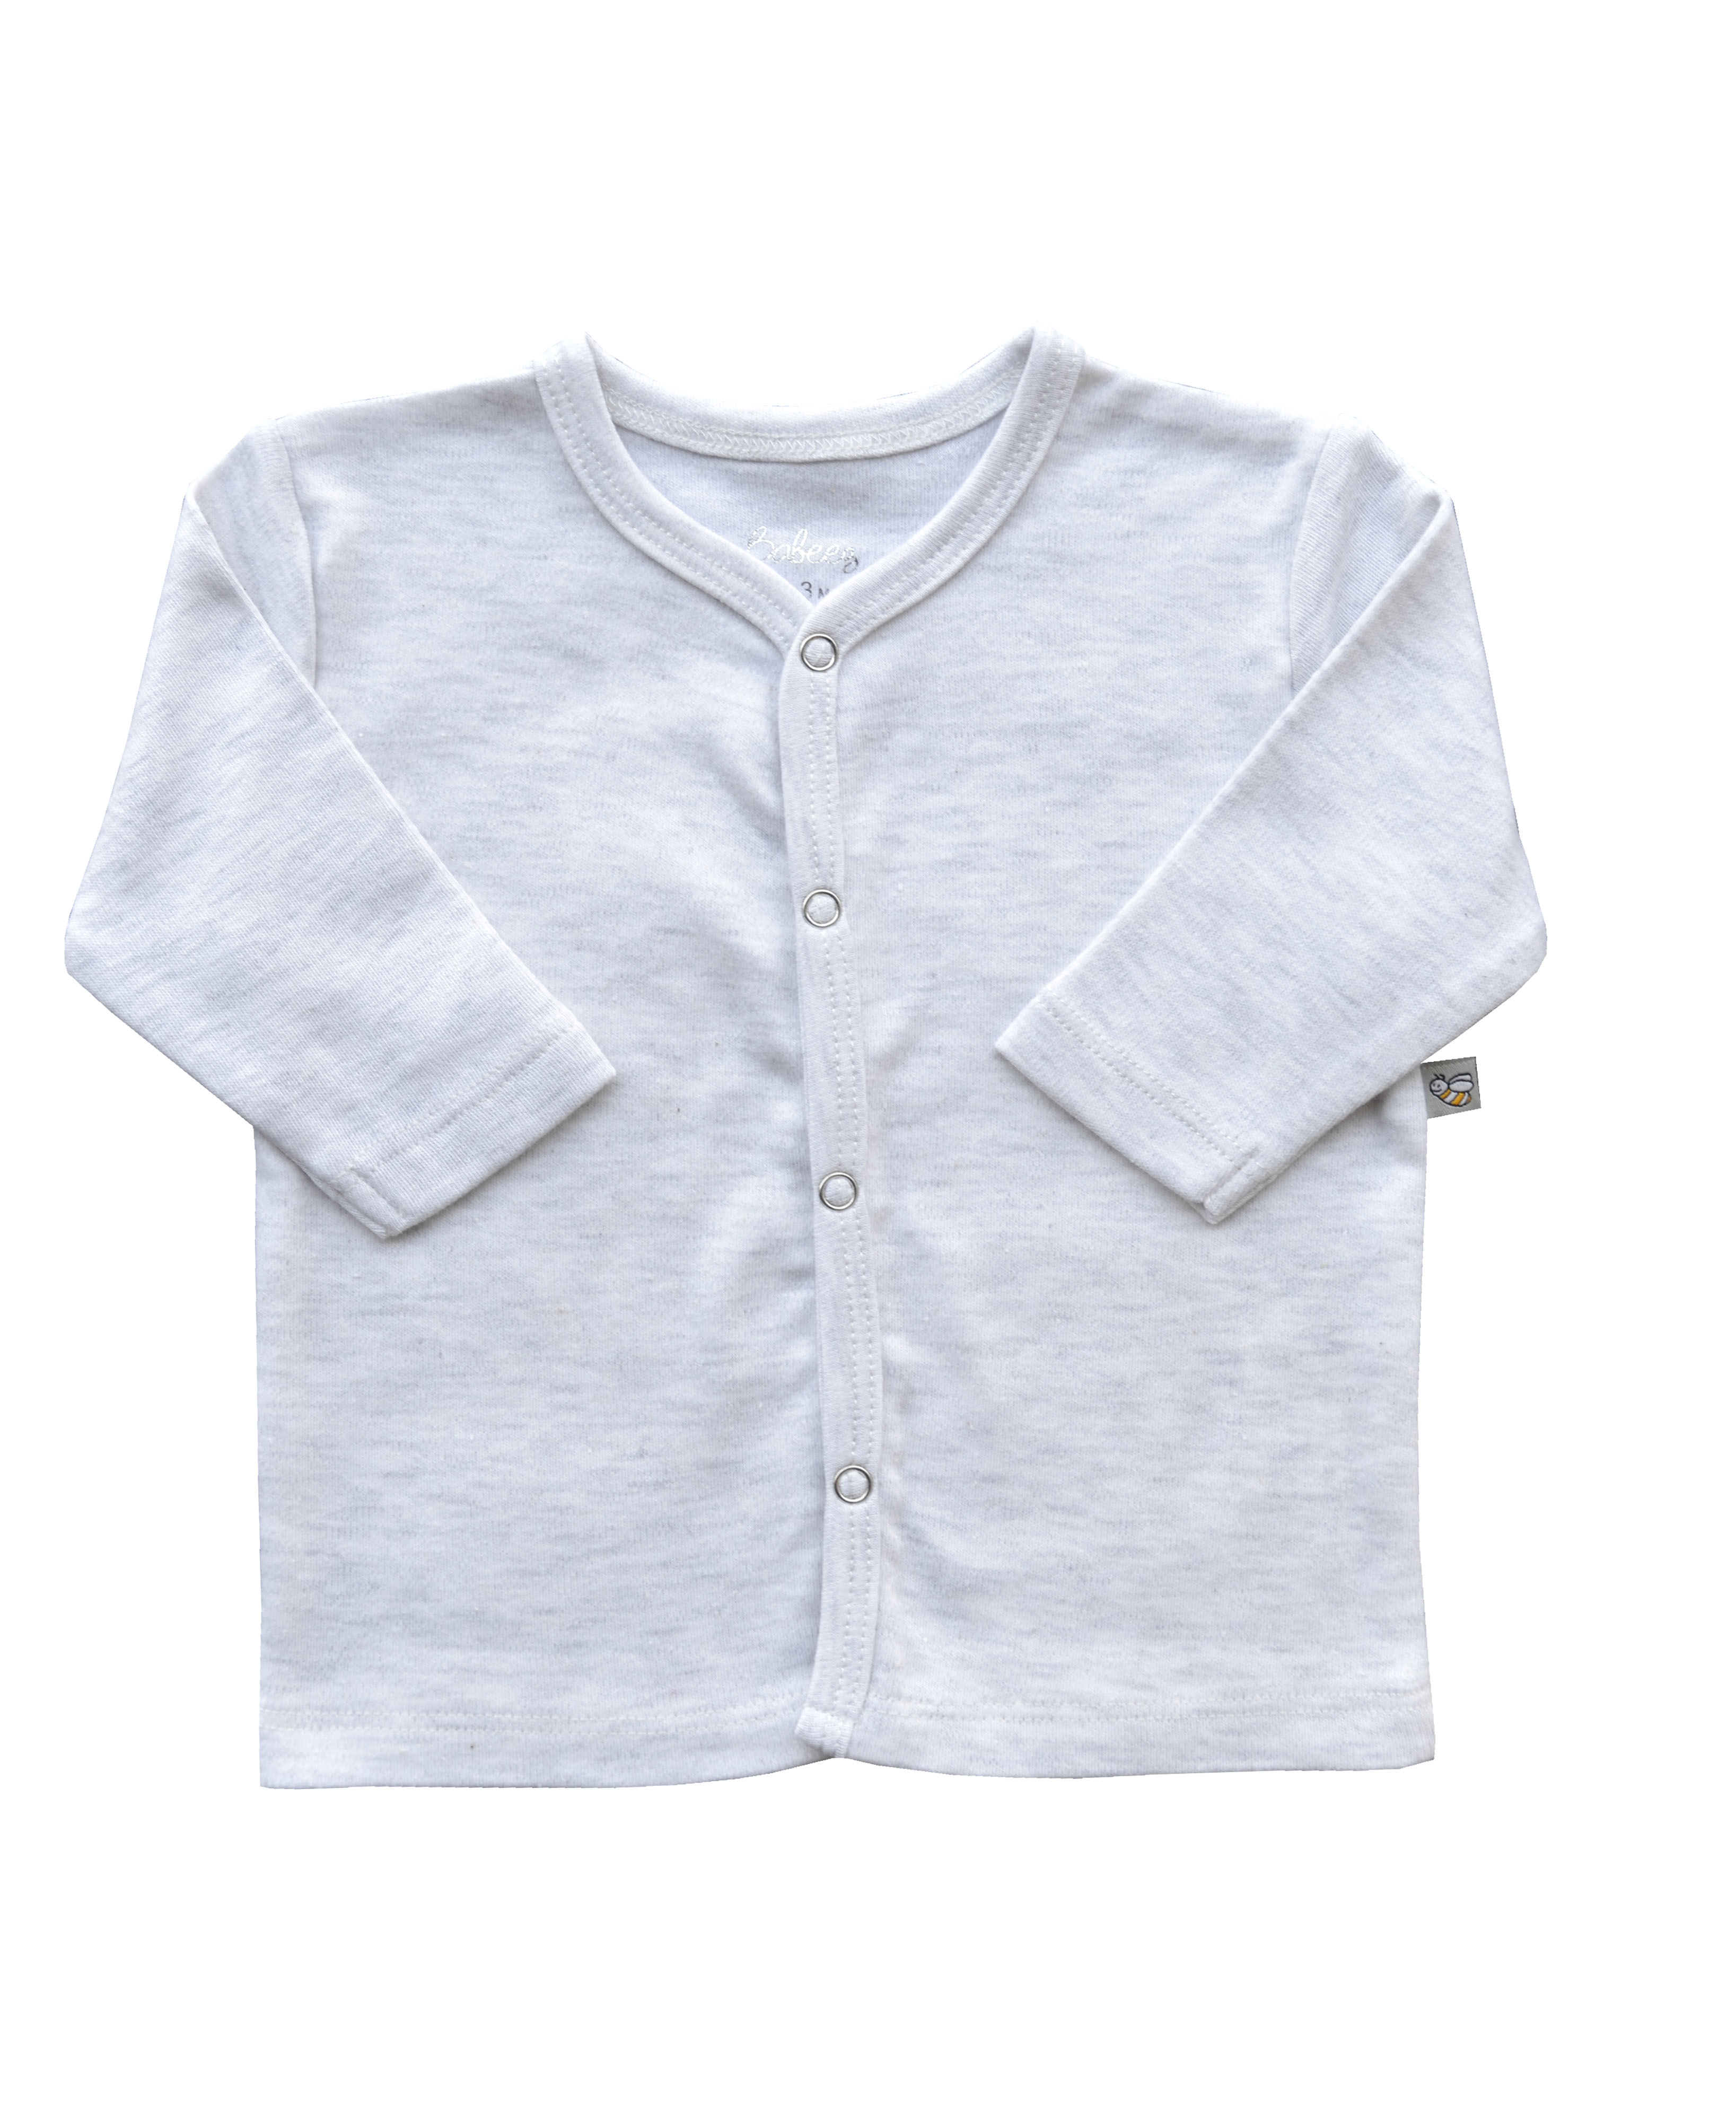 Babeez | Grey Long Sleeve Jhabla (100% Cotton Interlock Biowash) undefined